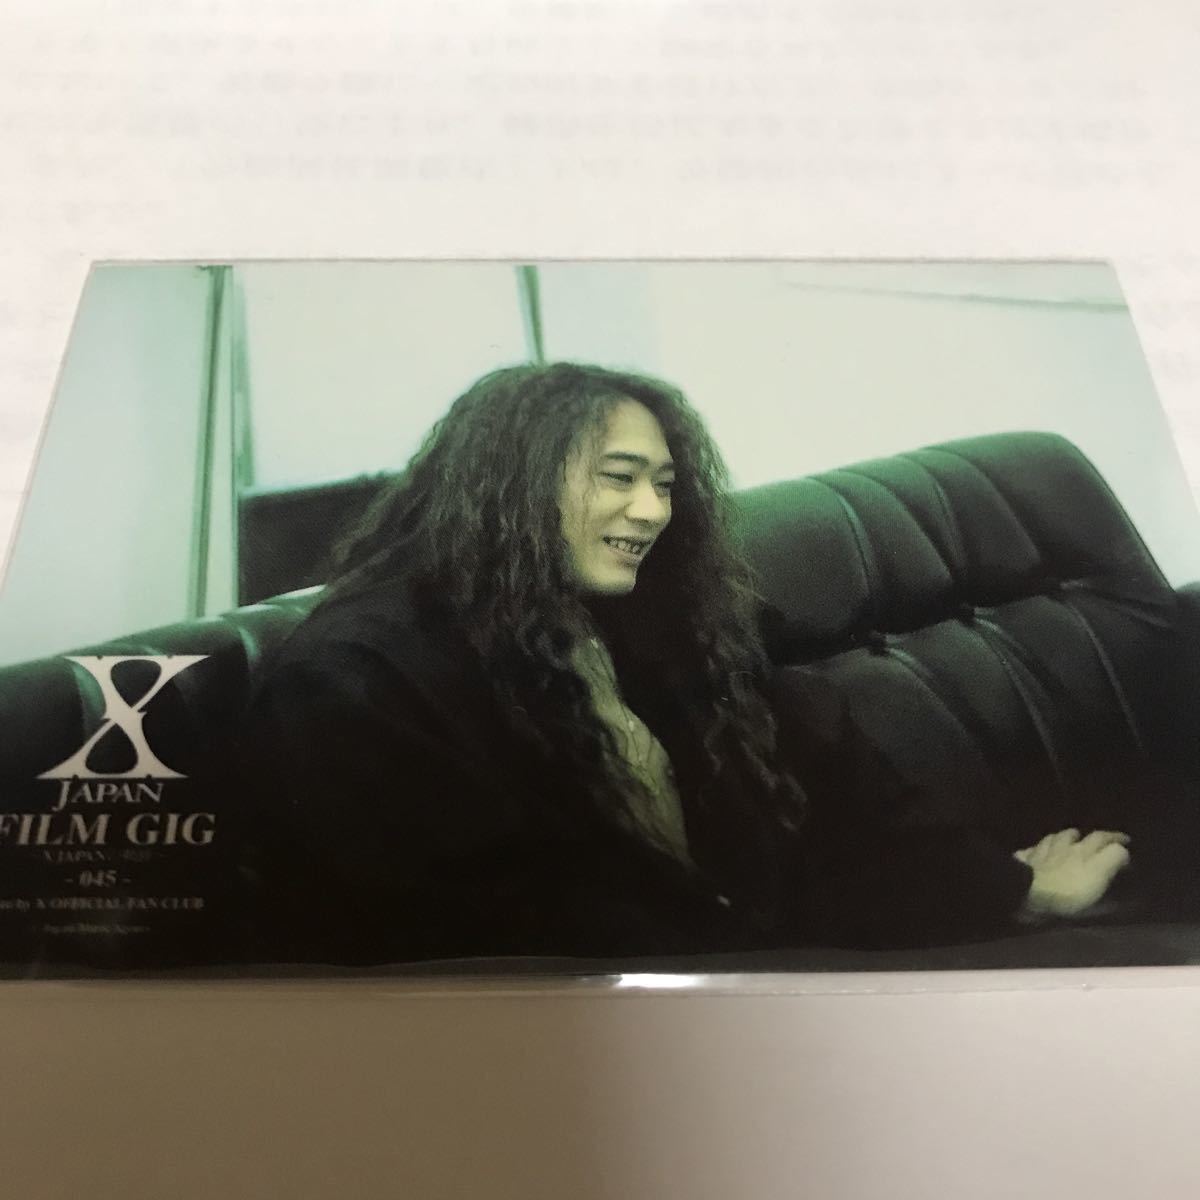 X JAPAN FILM GIG トレカ カード hide YOSHIKI Toshl TAIJI xjapan PATA HEATH グッズ ジャパメタ V系 フィルムギグ ヴィジュアル系 045_画像1